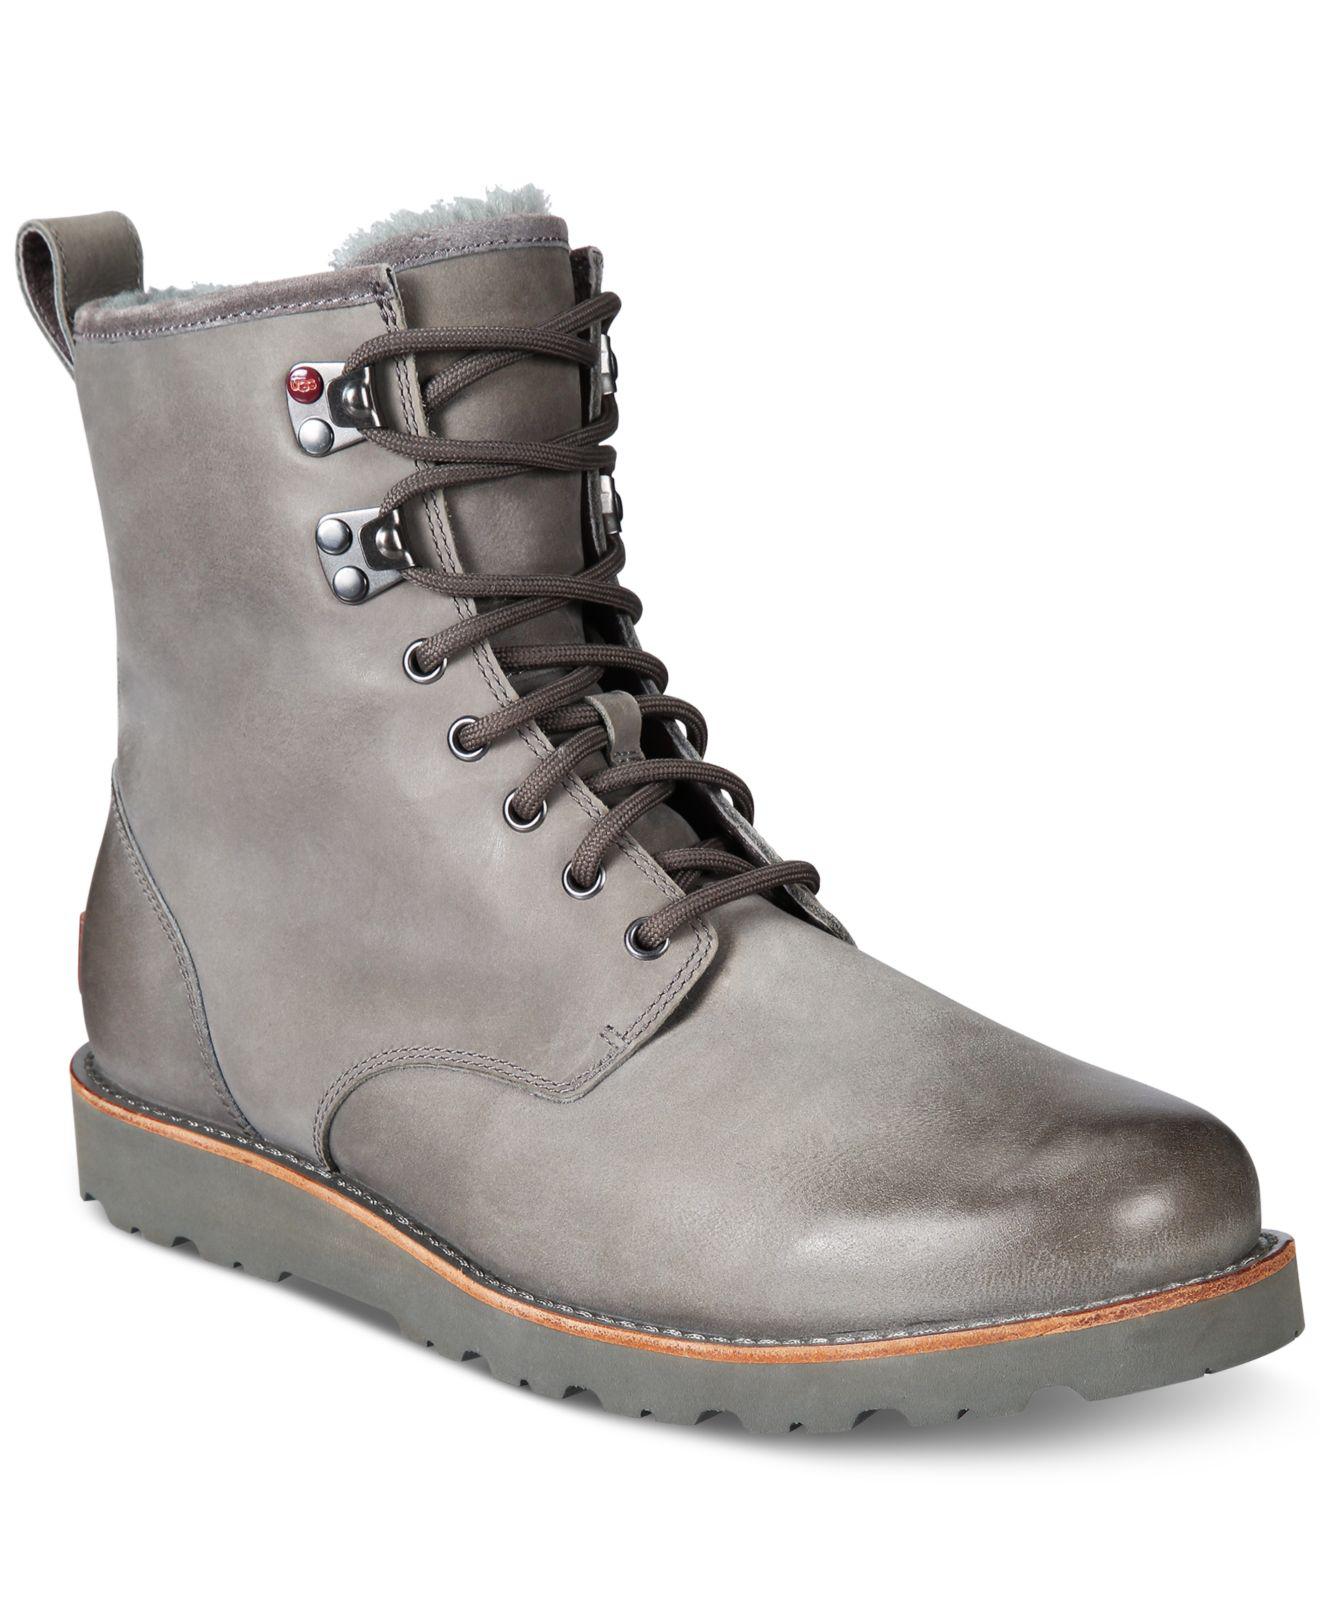 UGG Leather Men's Hannen Tl Waterproof Boots in Metal (Gray) for Men - Lyst